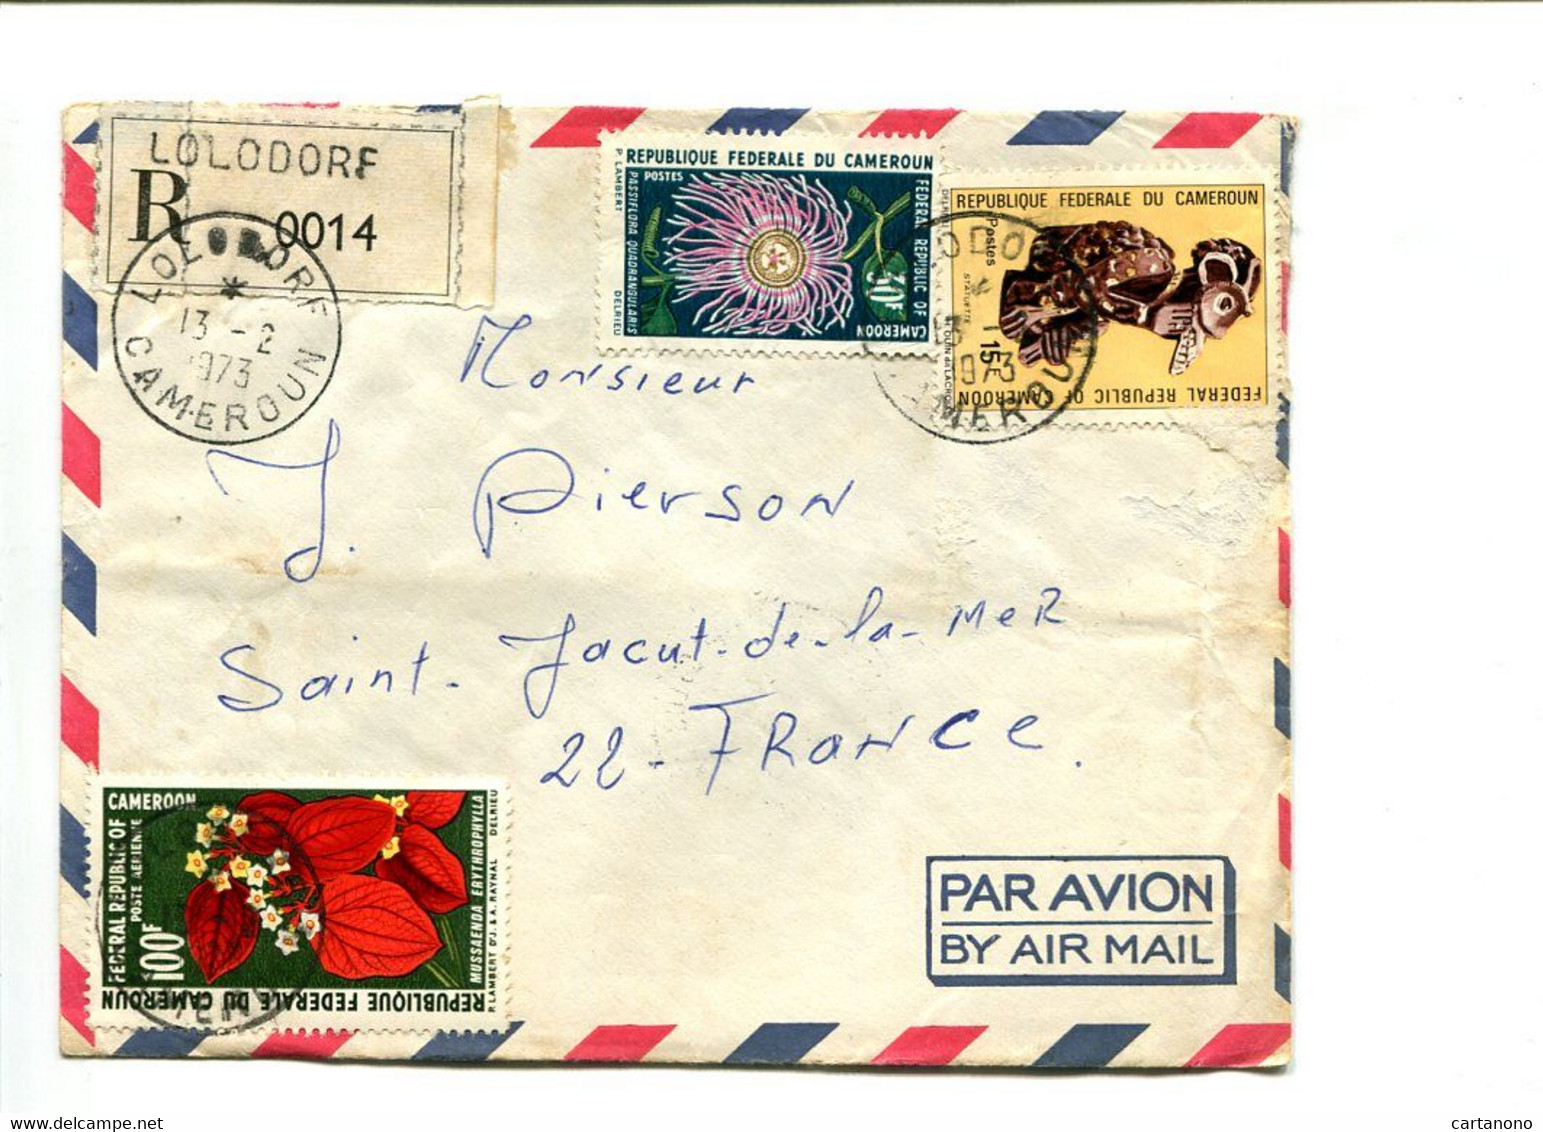 CAMEROUN Lolodore 1973 -  Affranchissement Sur Lettre Recommandée Par Avion - Fleurs - Camerun (1960-...)